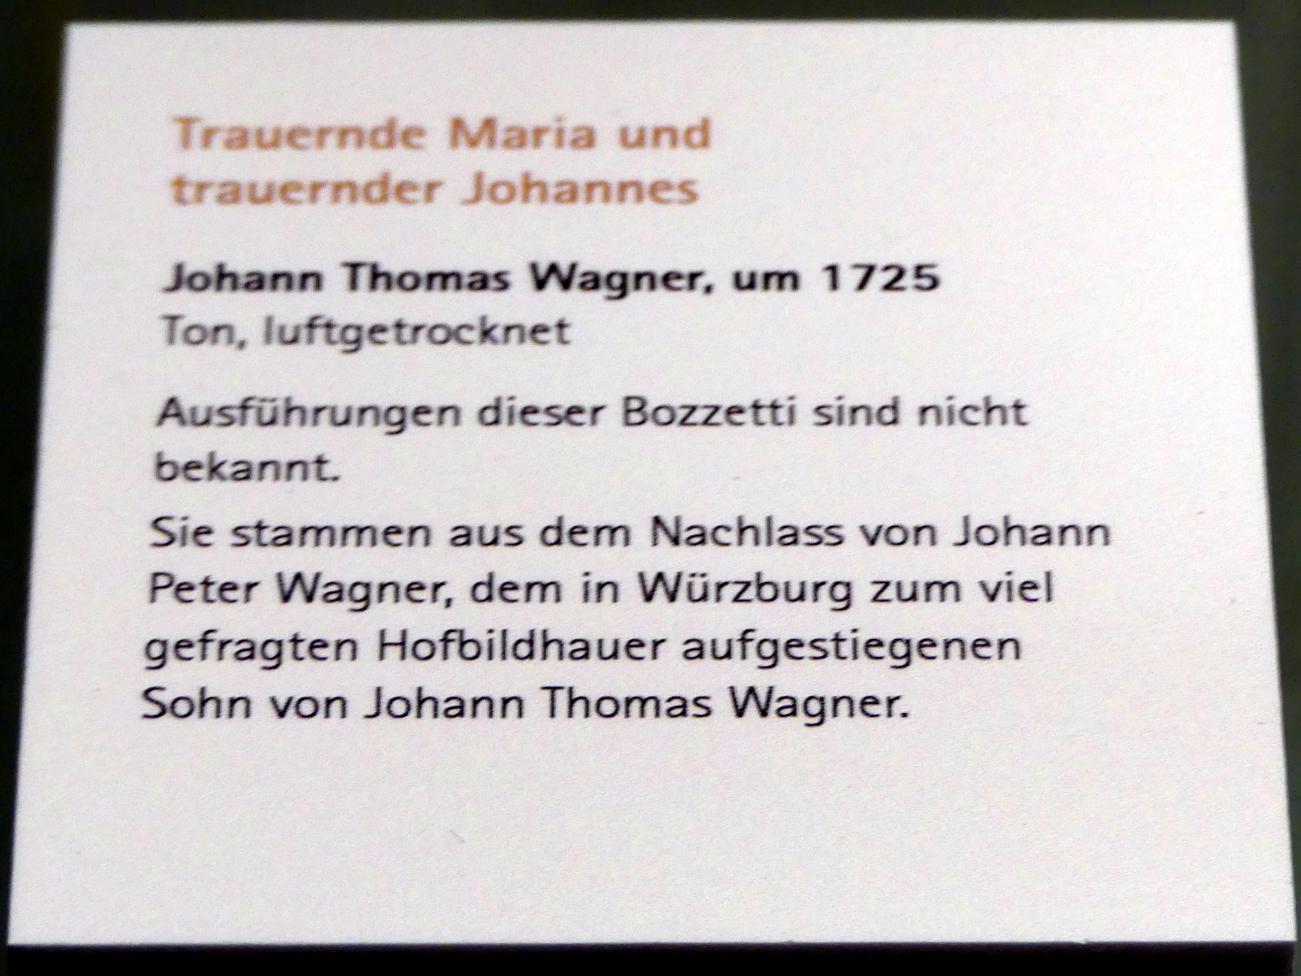 Johann Thomas Wagner (1725), Trauernde Maria und trauernder Johannes, Würzburg, Museum für Franken (ehem. Mainfränkisches Museum), Bozzetti-Sammlung, um 1725, Bild 2/2